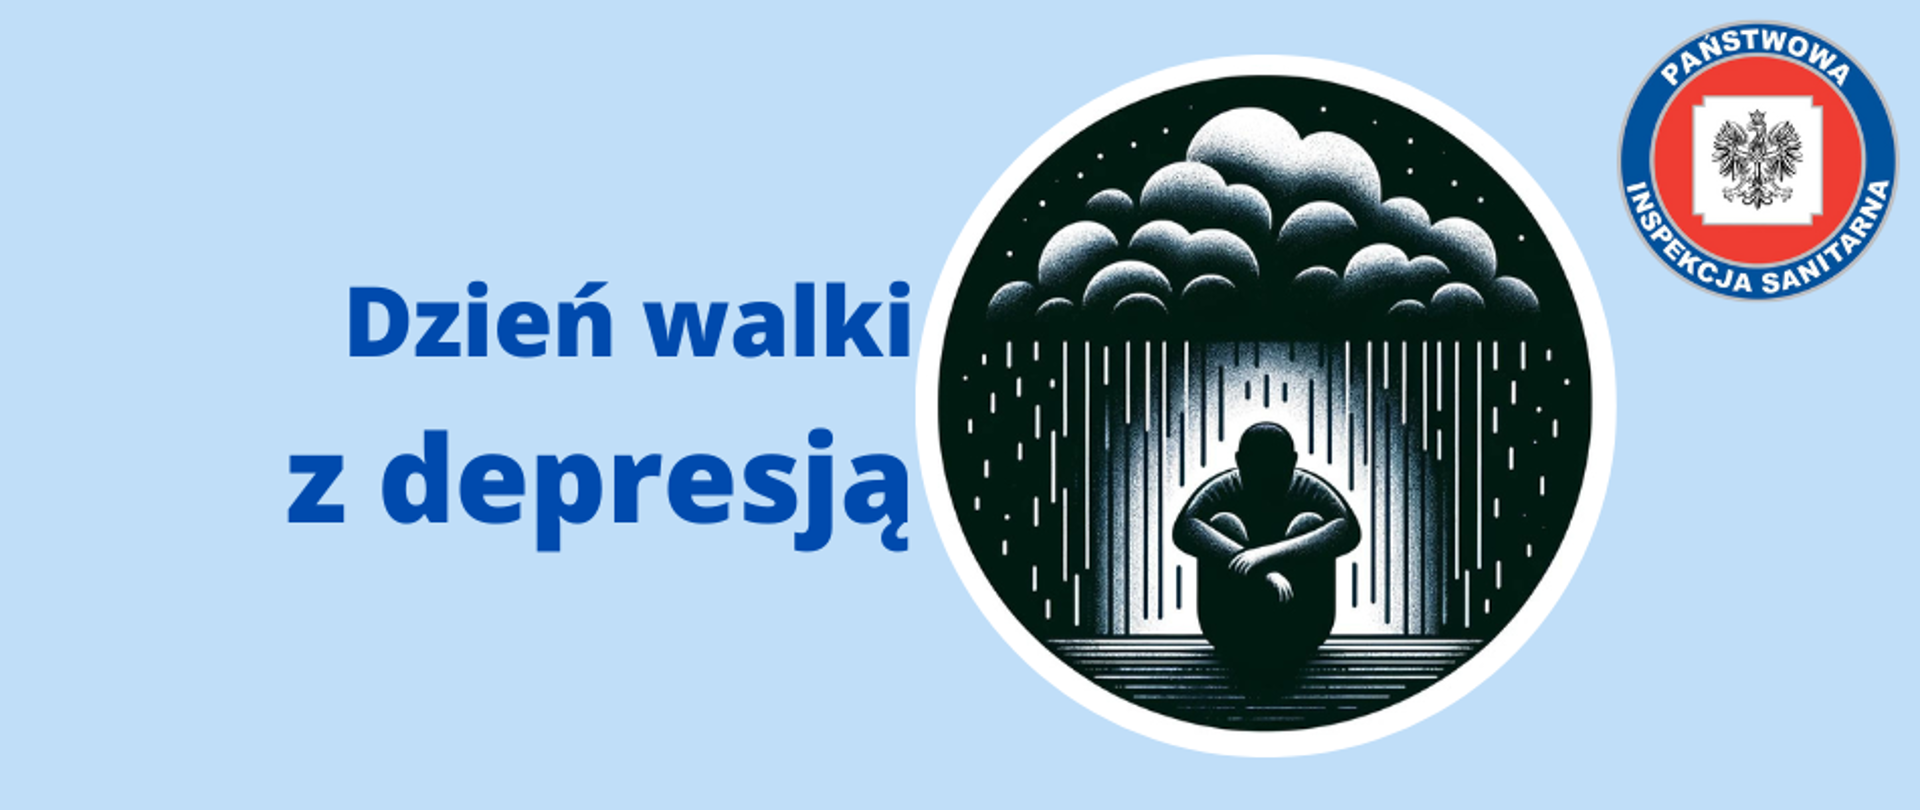 Baner przedstawiający tytuł artykułu z hasłem "Dzień walki z depresją". Po prawej stronie znajduje się okrągła monochromatyczna rycina siedzącego na ziemi mężczyzny pod chmurą, z której pada deszcz. W prawym górnym rogu umieszczono logo Państwowej Inspekcji Sanitarnej. Całość na niebieskim tle pasującym do kolorystyki strony internetowej.